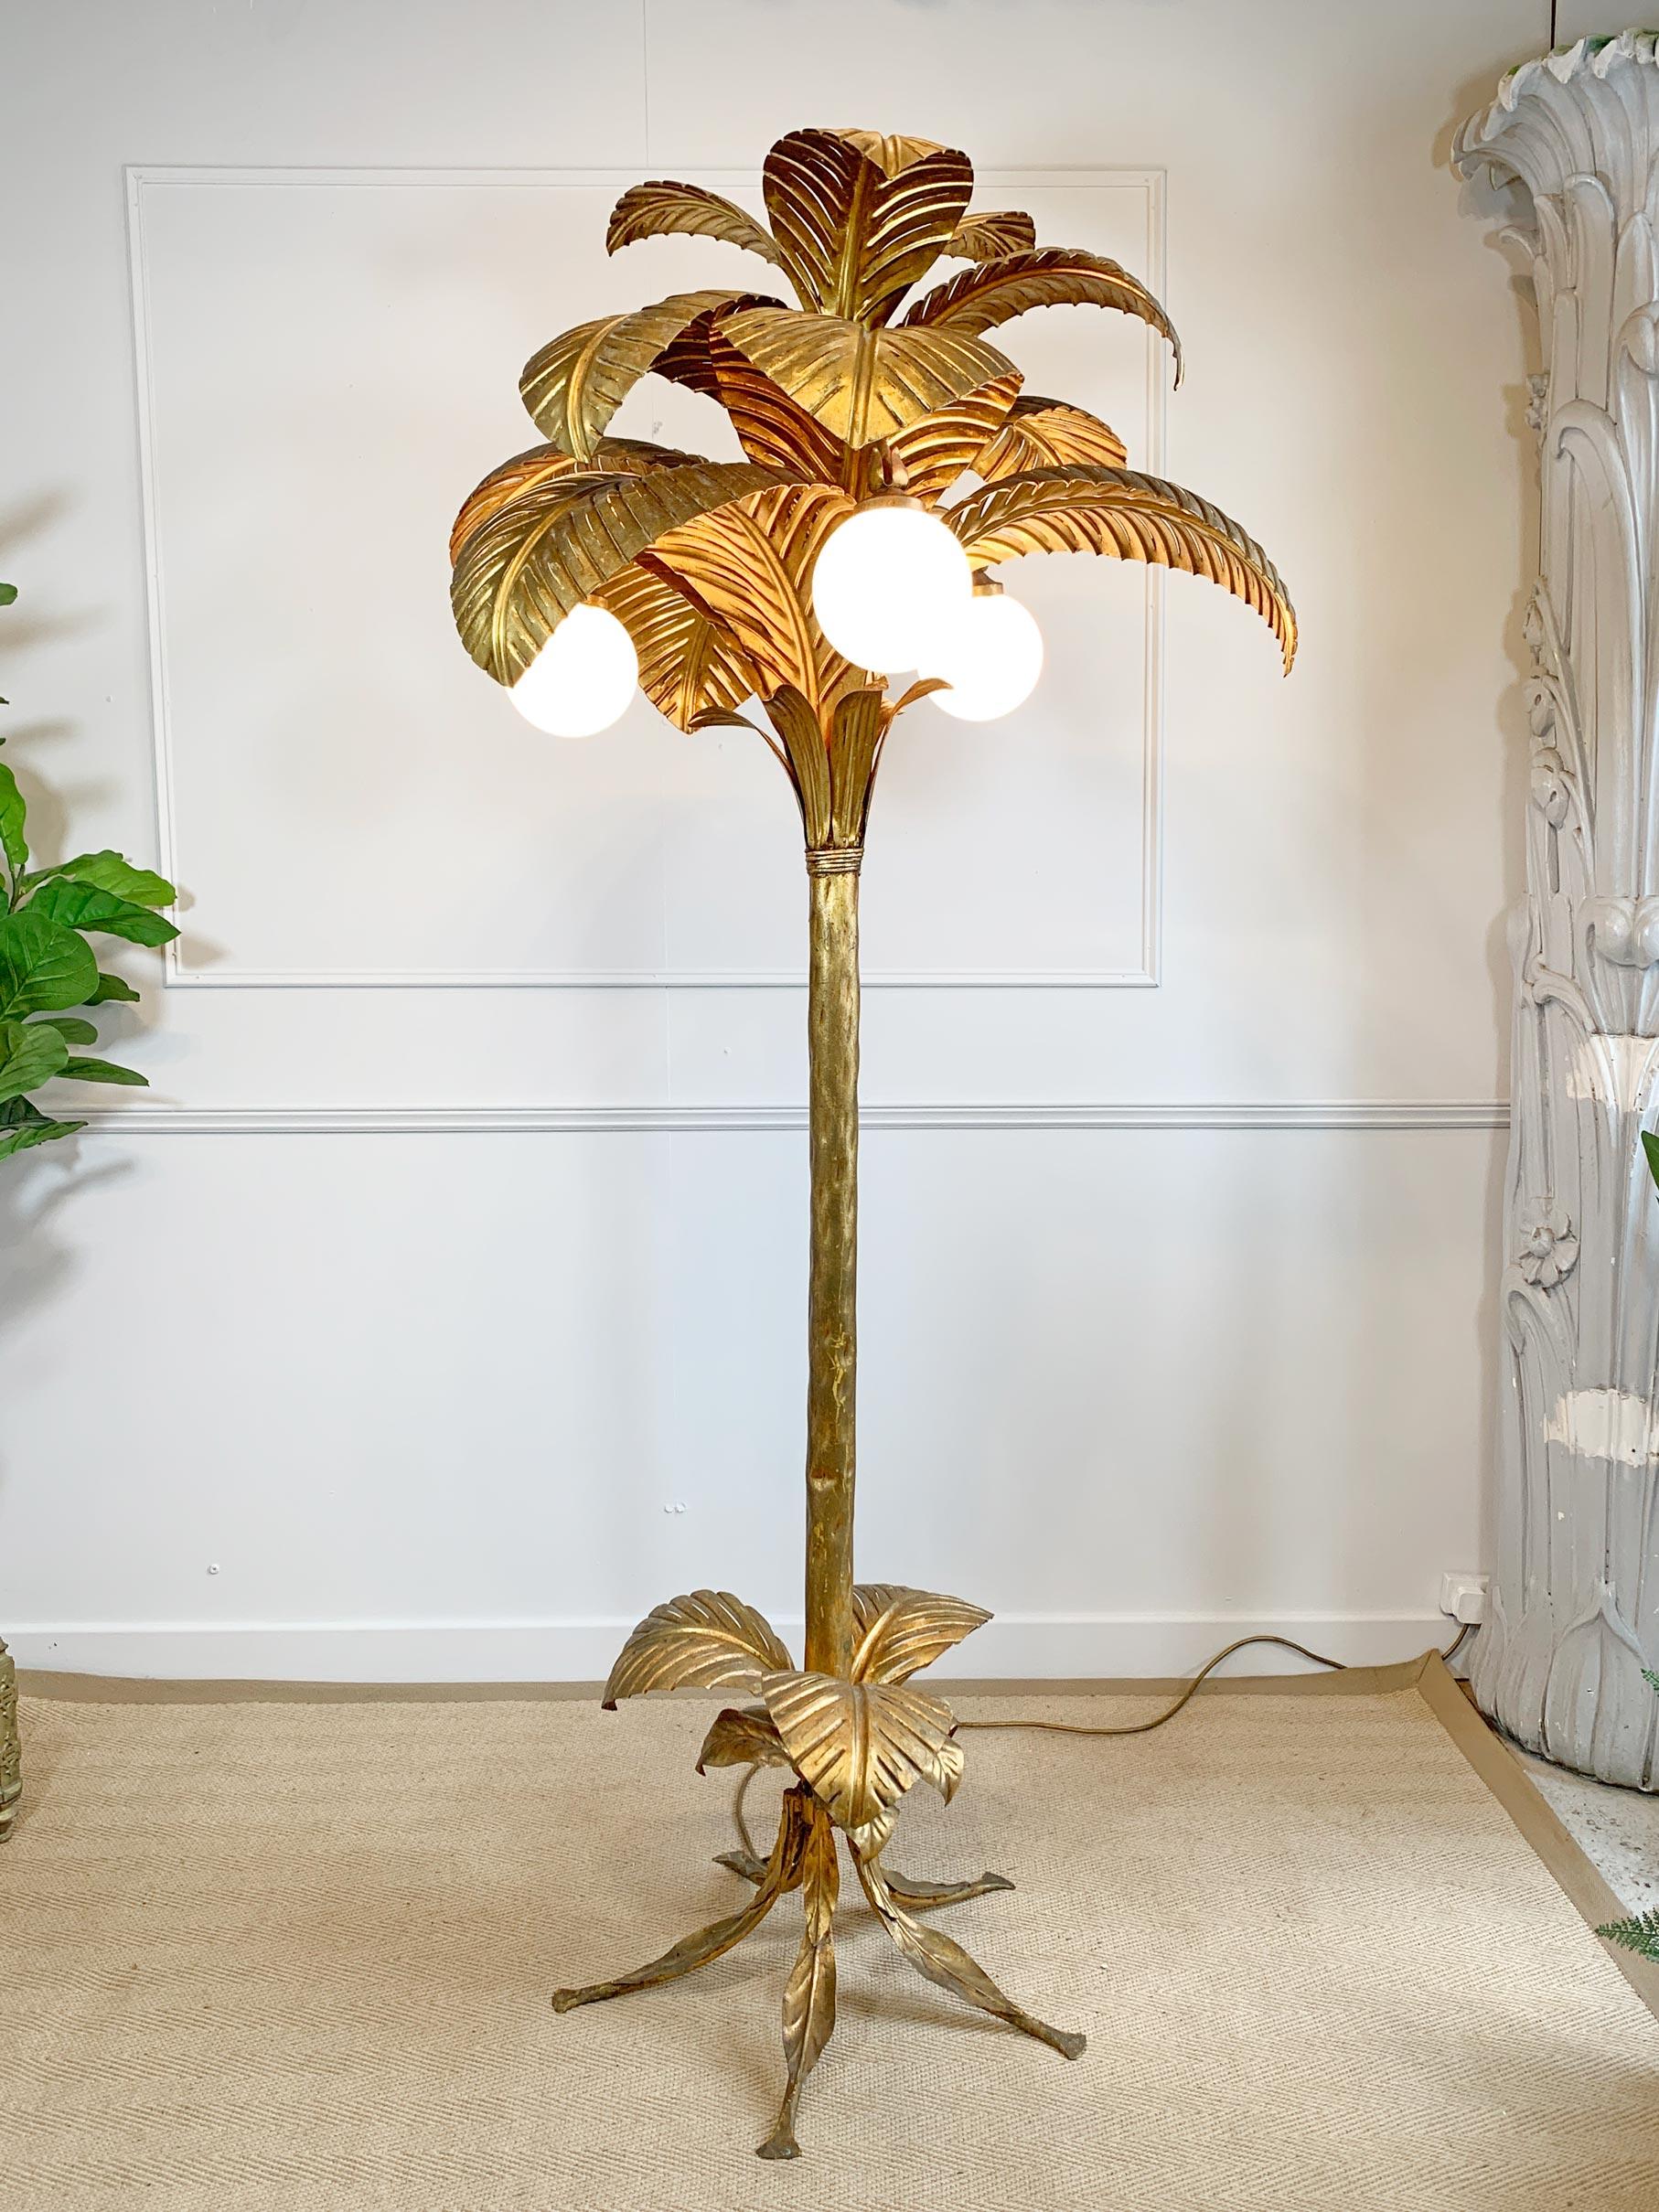 Absolut atemberaubende Palm Tree Stehleuchte, entworfen von Sergio Terzani in den 1970er Jahren. Diese riesige Lampe ist eine der seltensten und begehrtesten in der originalen blattvergoldeten Ausführung, nicht zu verwechseln mit den späteren